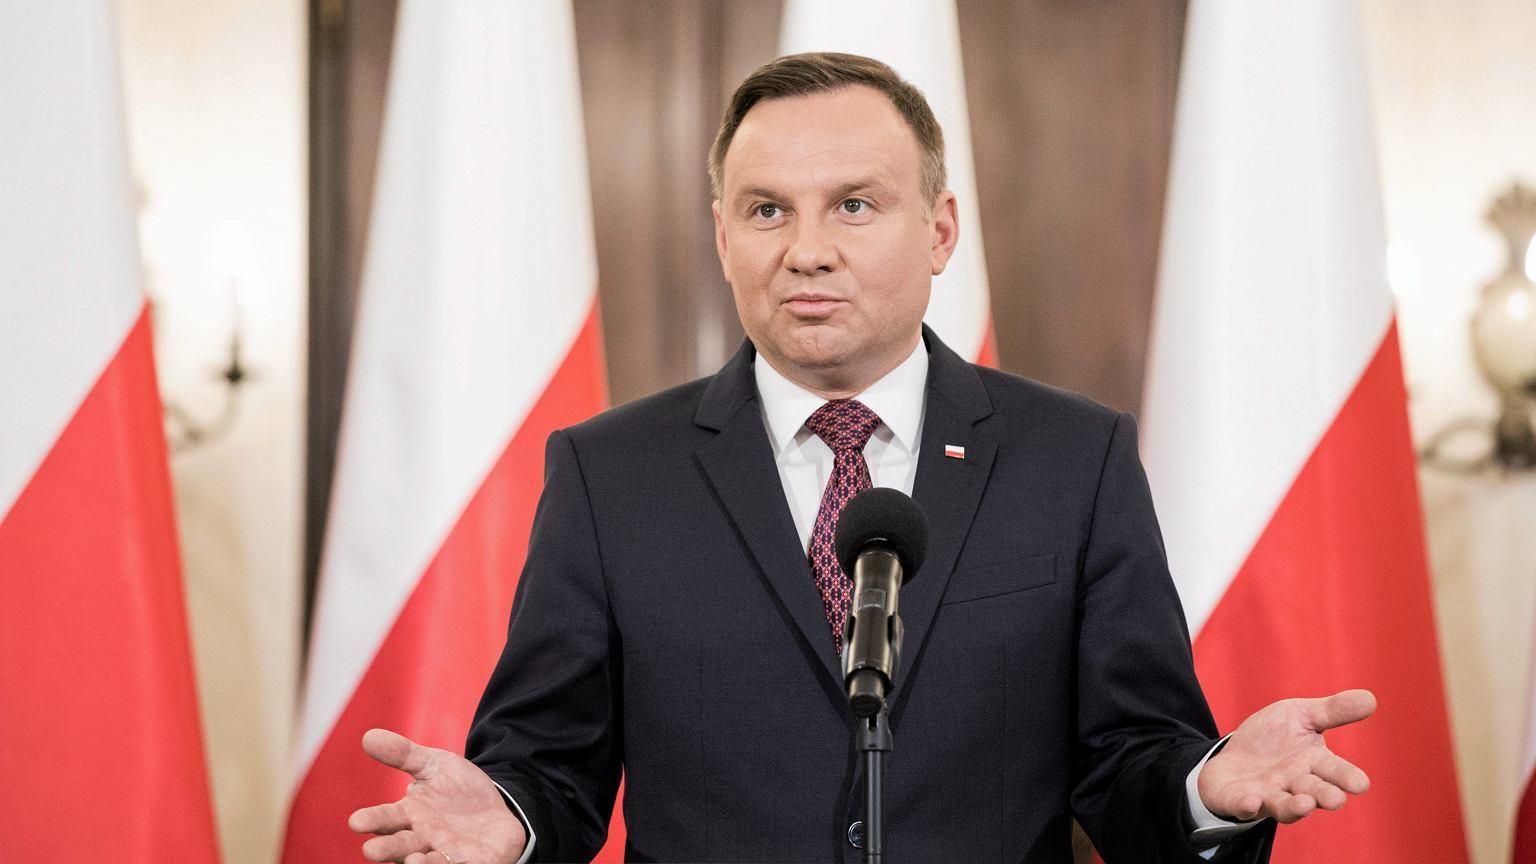 "Завтра може померти Дуда": у Польщі затримали чоловіка, який погрожував президенту